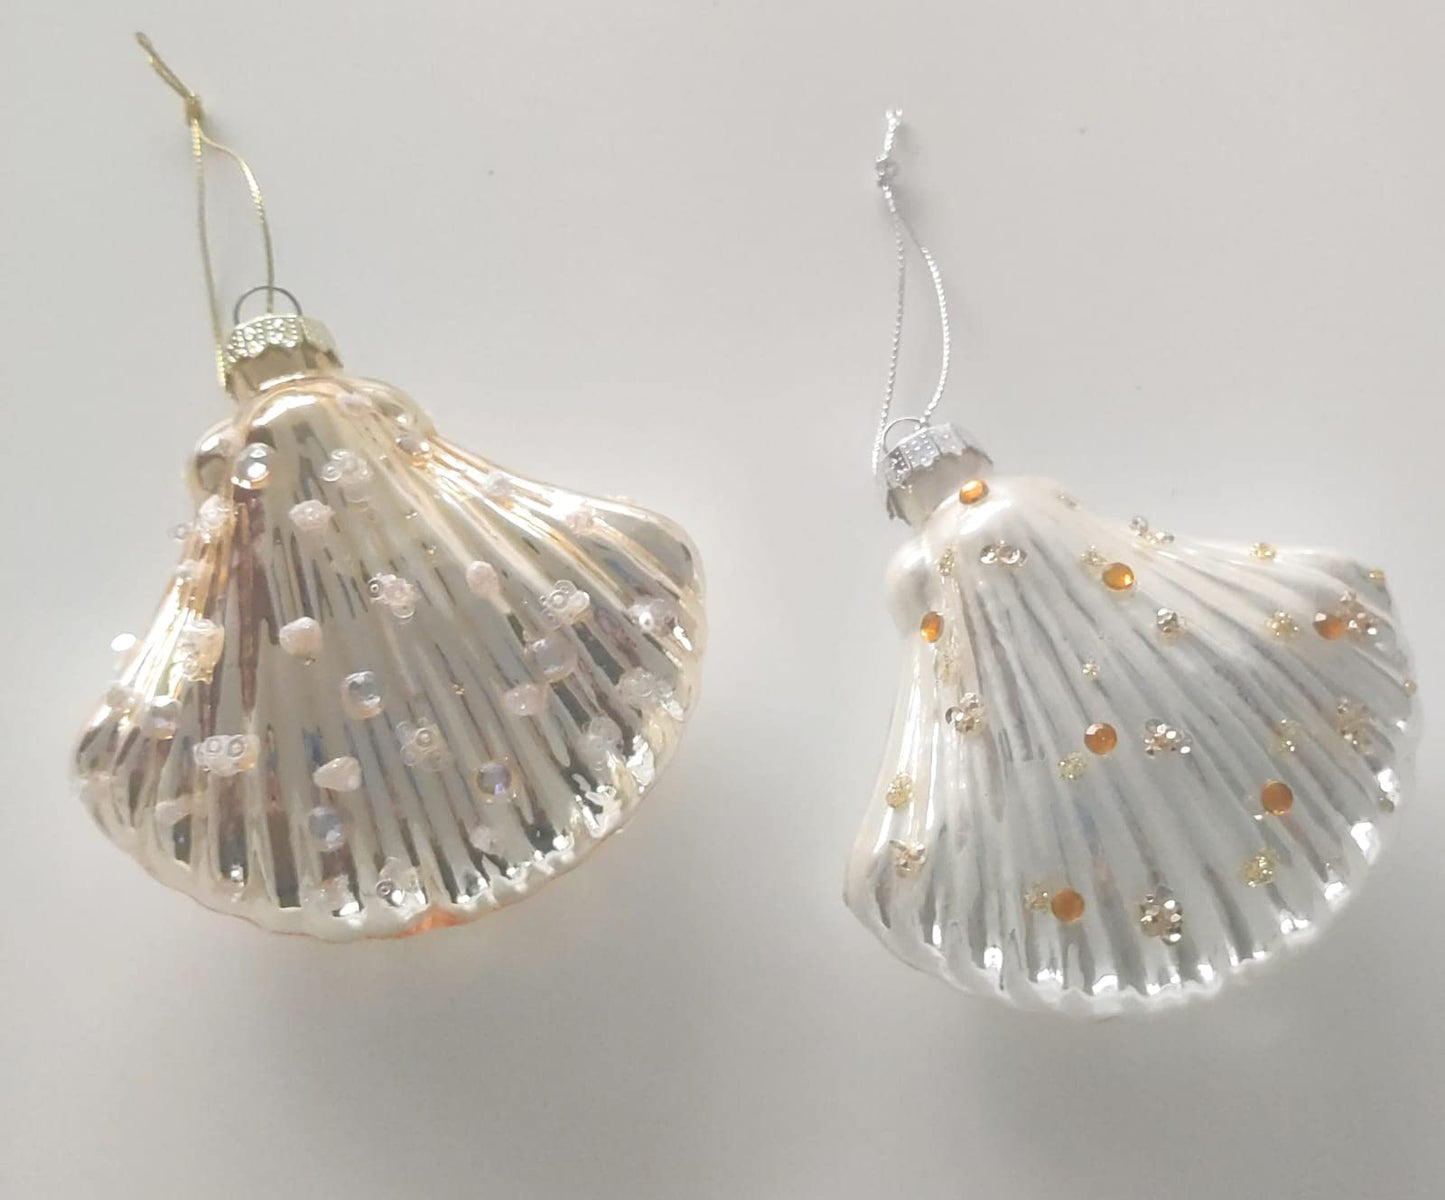 Coquillages avec applique perlée - décorations de noël - pack de 2 (1 couleur or - 1 couleur nacre)